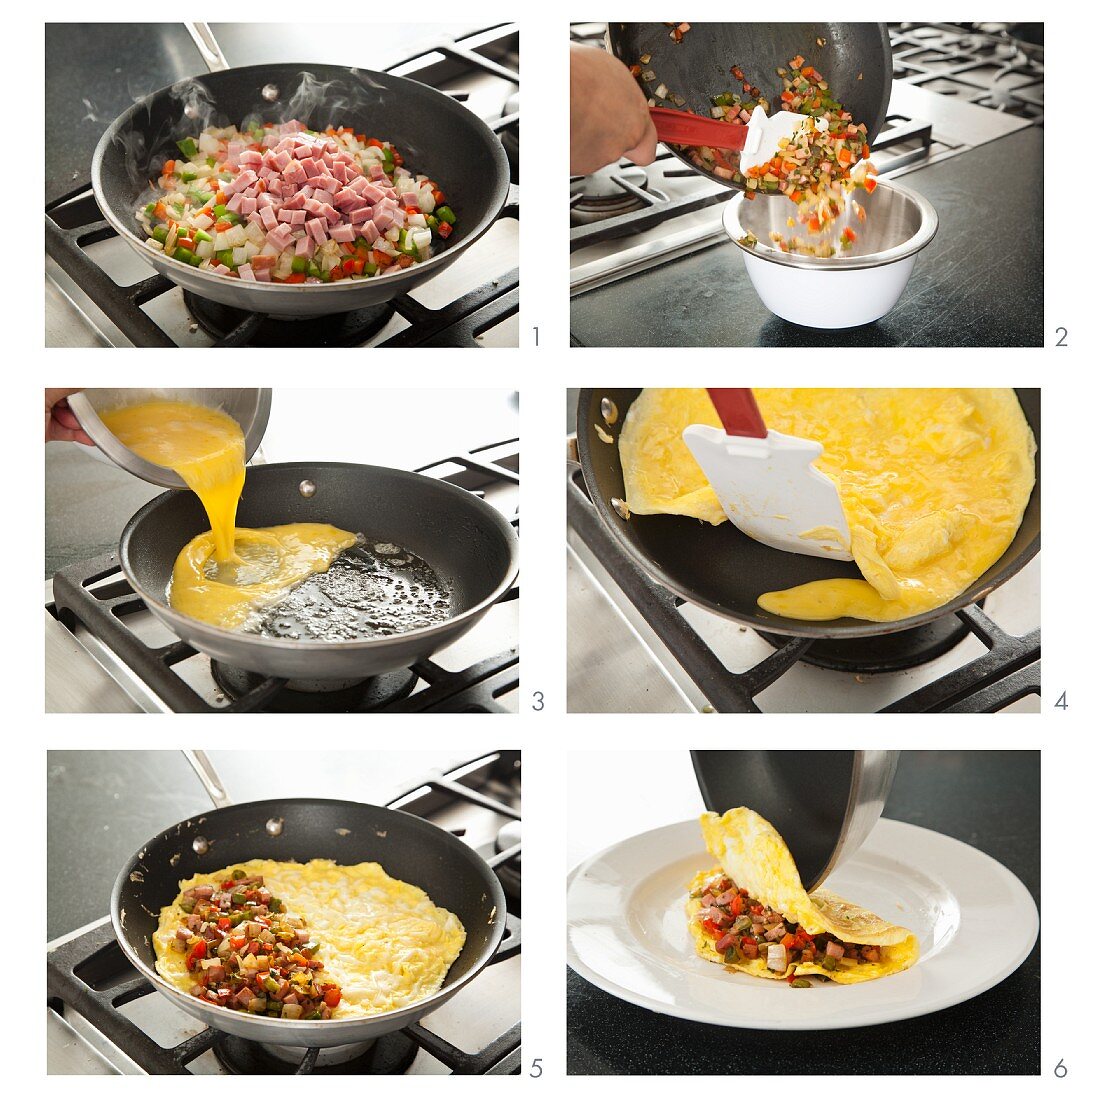 Steps for Making a Denver Omelet